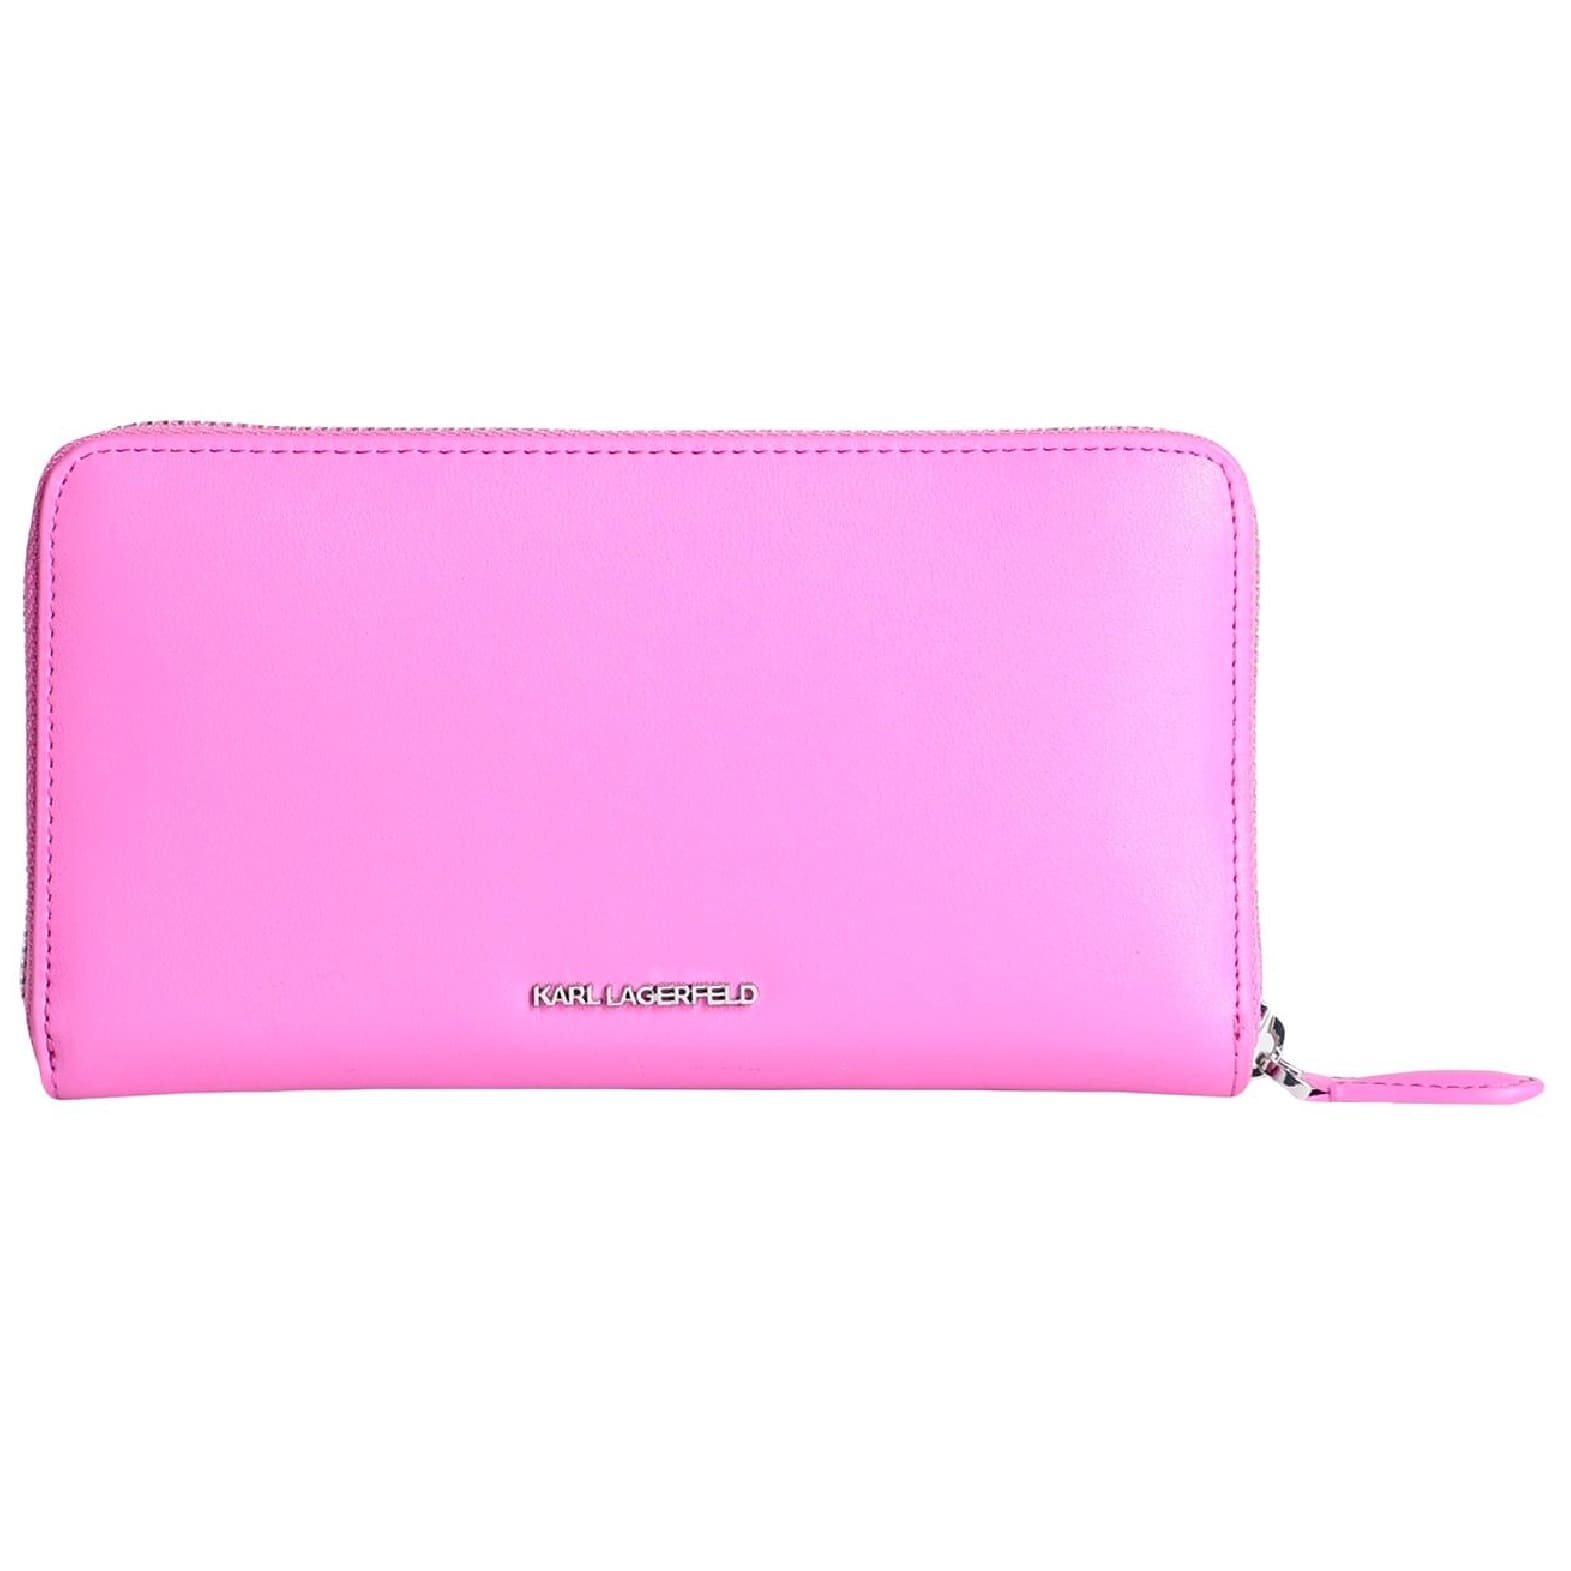 Кошелек Karl Lagerfeld K/ikonik 2.0 Leather Cont, розовый кошелек для ключей ручной работы из натуральной кожи маленький портативный бумажник на молнии с кармашком для карт для хранения